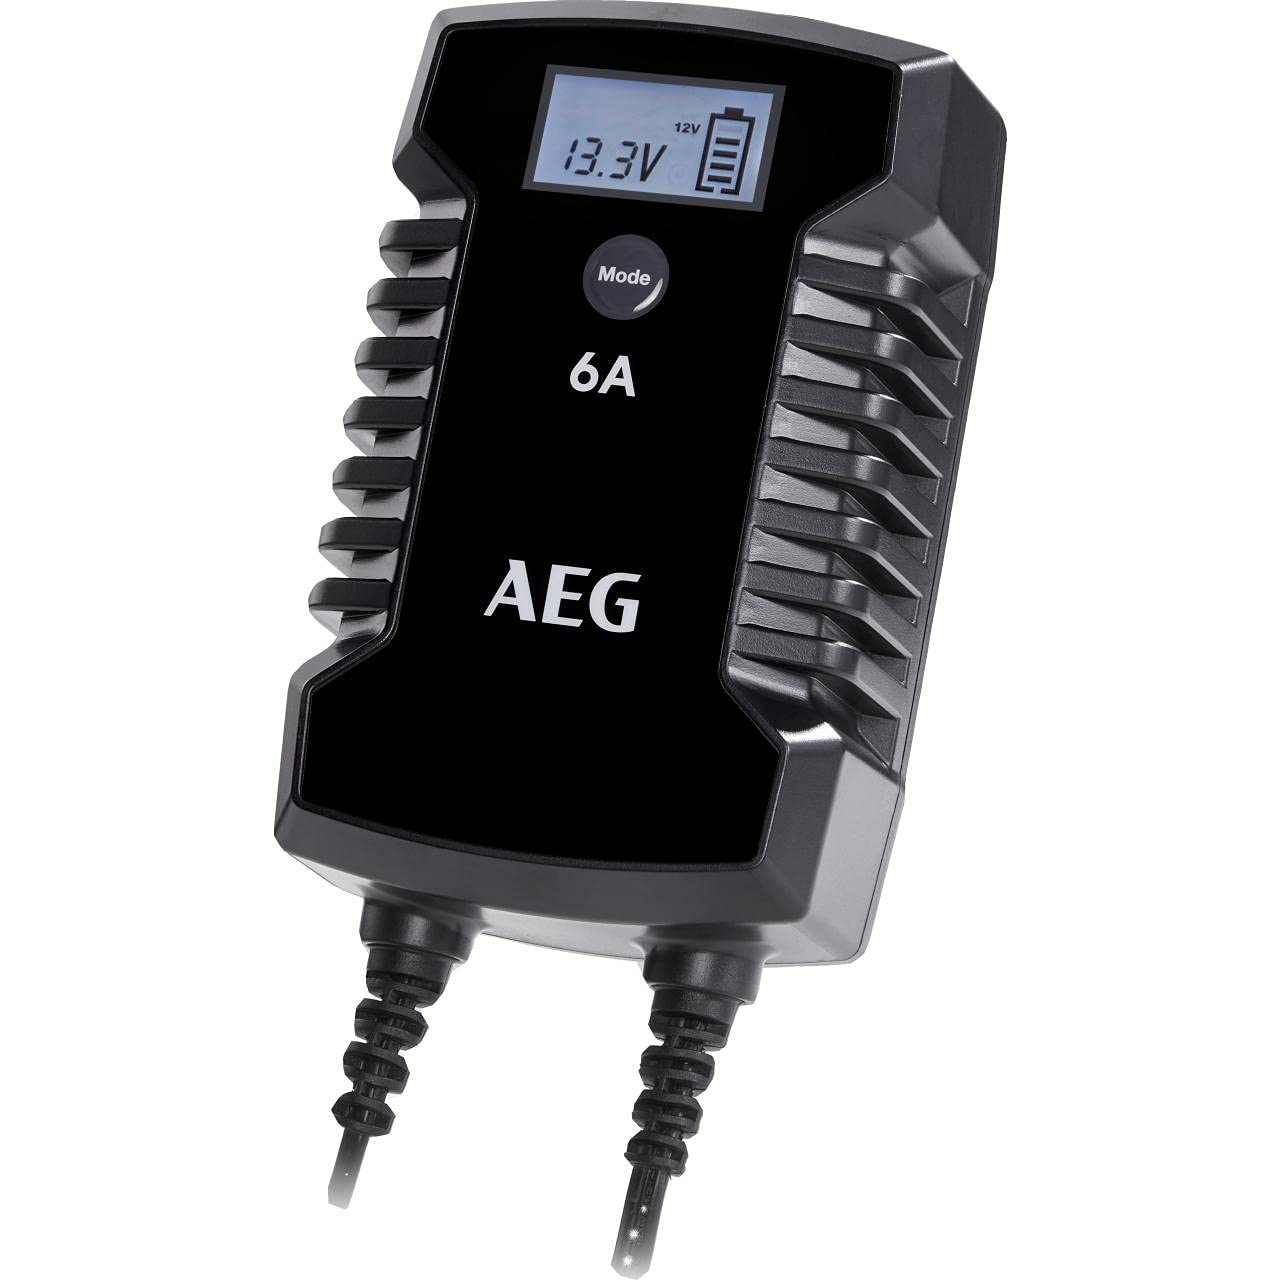 AEG Automotive 10617 Mikroprozessor-Ladegerät für Auto Batterie LD 6.0, 6 Ampere für 6/12 V, 7-HF Ladestufen, Autostartfunktion Komfortanschluss von AEG